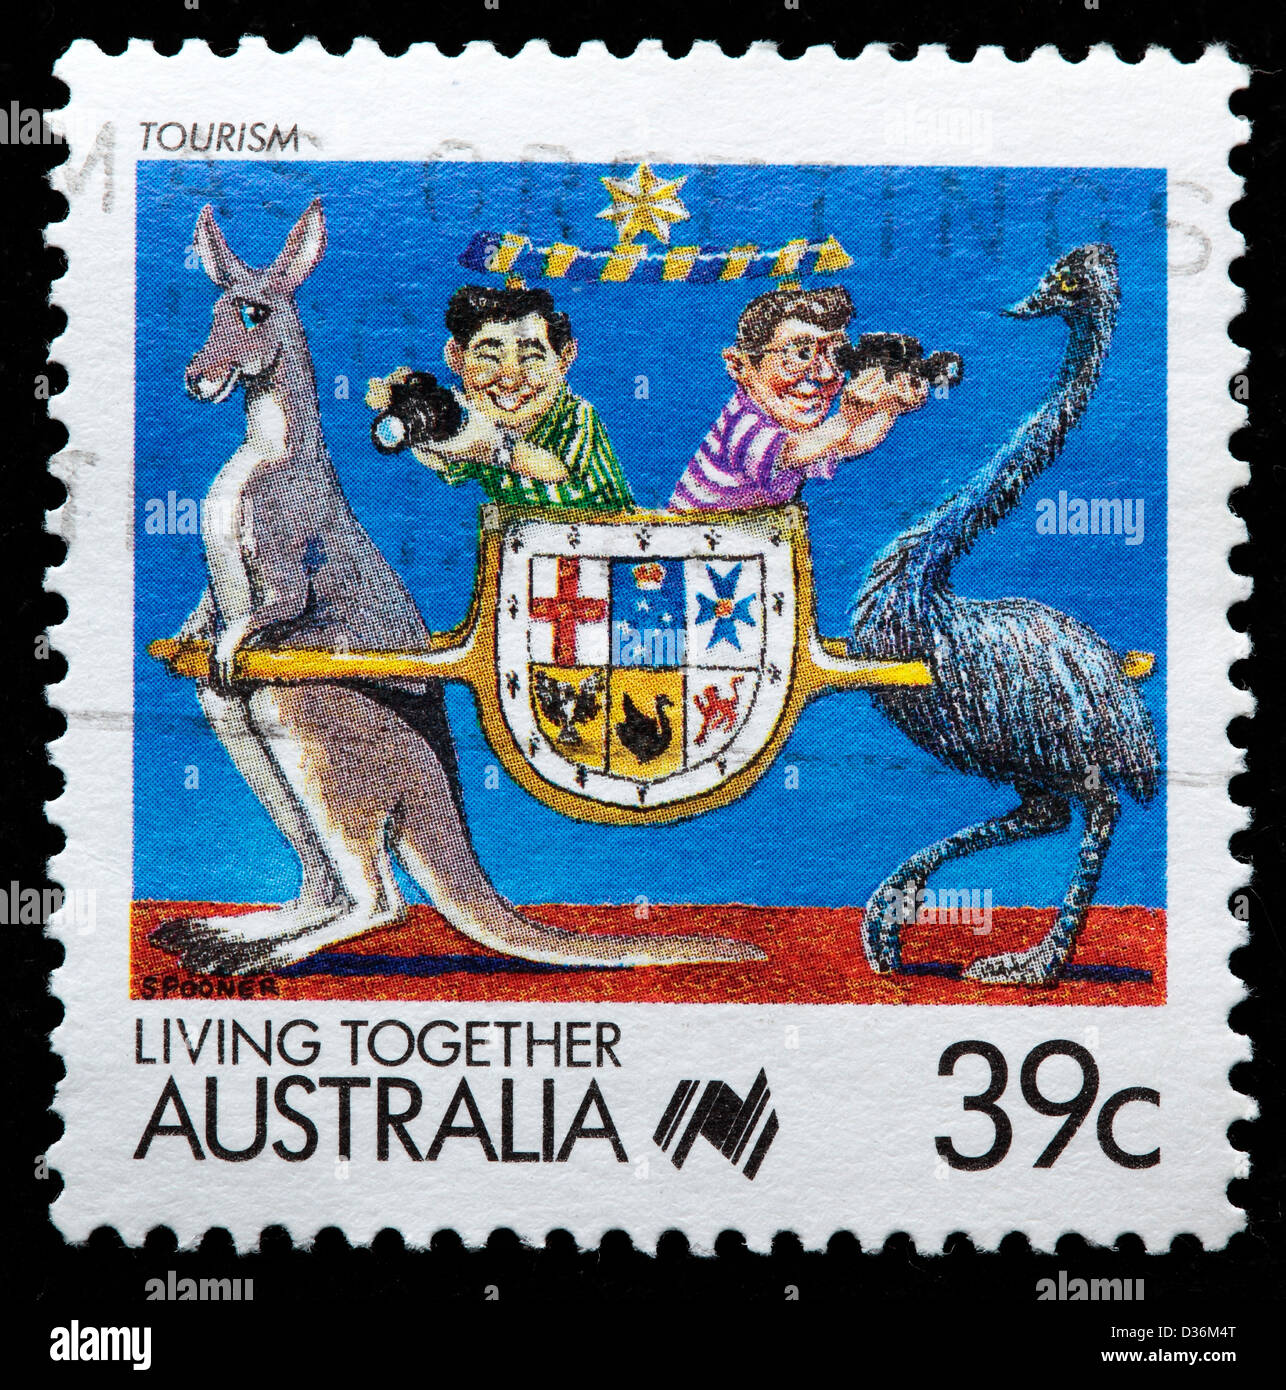 Tourismus, Zusammenleben, Briefmarke, Australien, 1988 Stockfoto